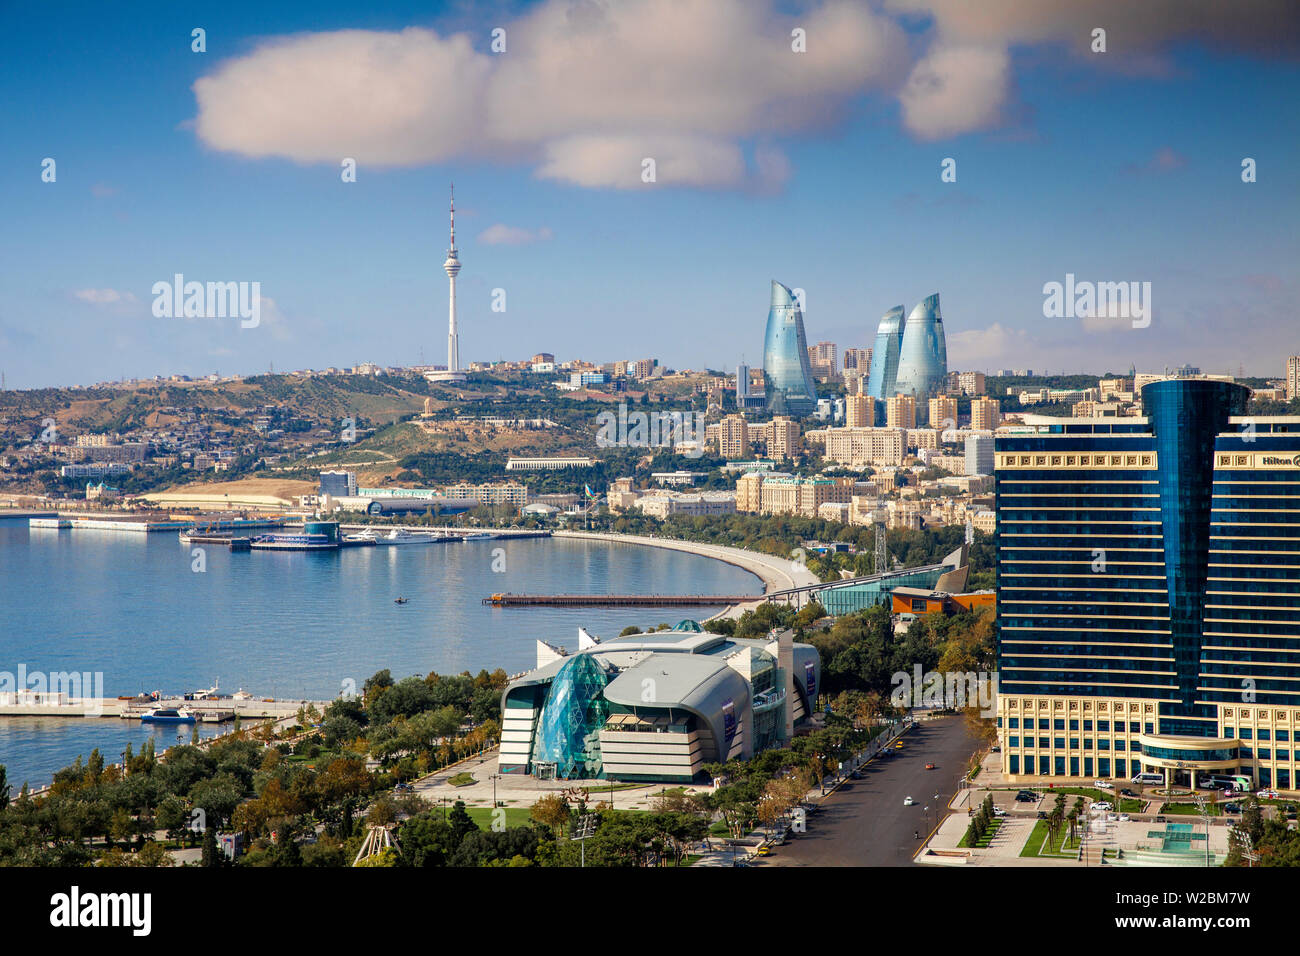 L'Azerbaïdjan, Bakou, en vue de la ville en direction de l'hôtel Hilton, Parc Bulvar shopping mall, Centre d'affaires de Bakou sur l'Bulvur - front de mer, dans la distance sont les tours de la flamme et la tour de télévision Banque D'Images